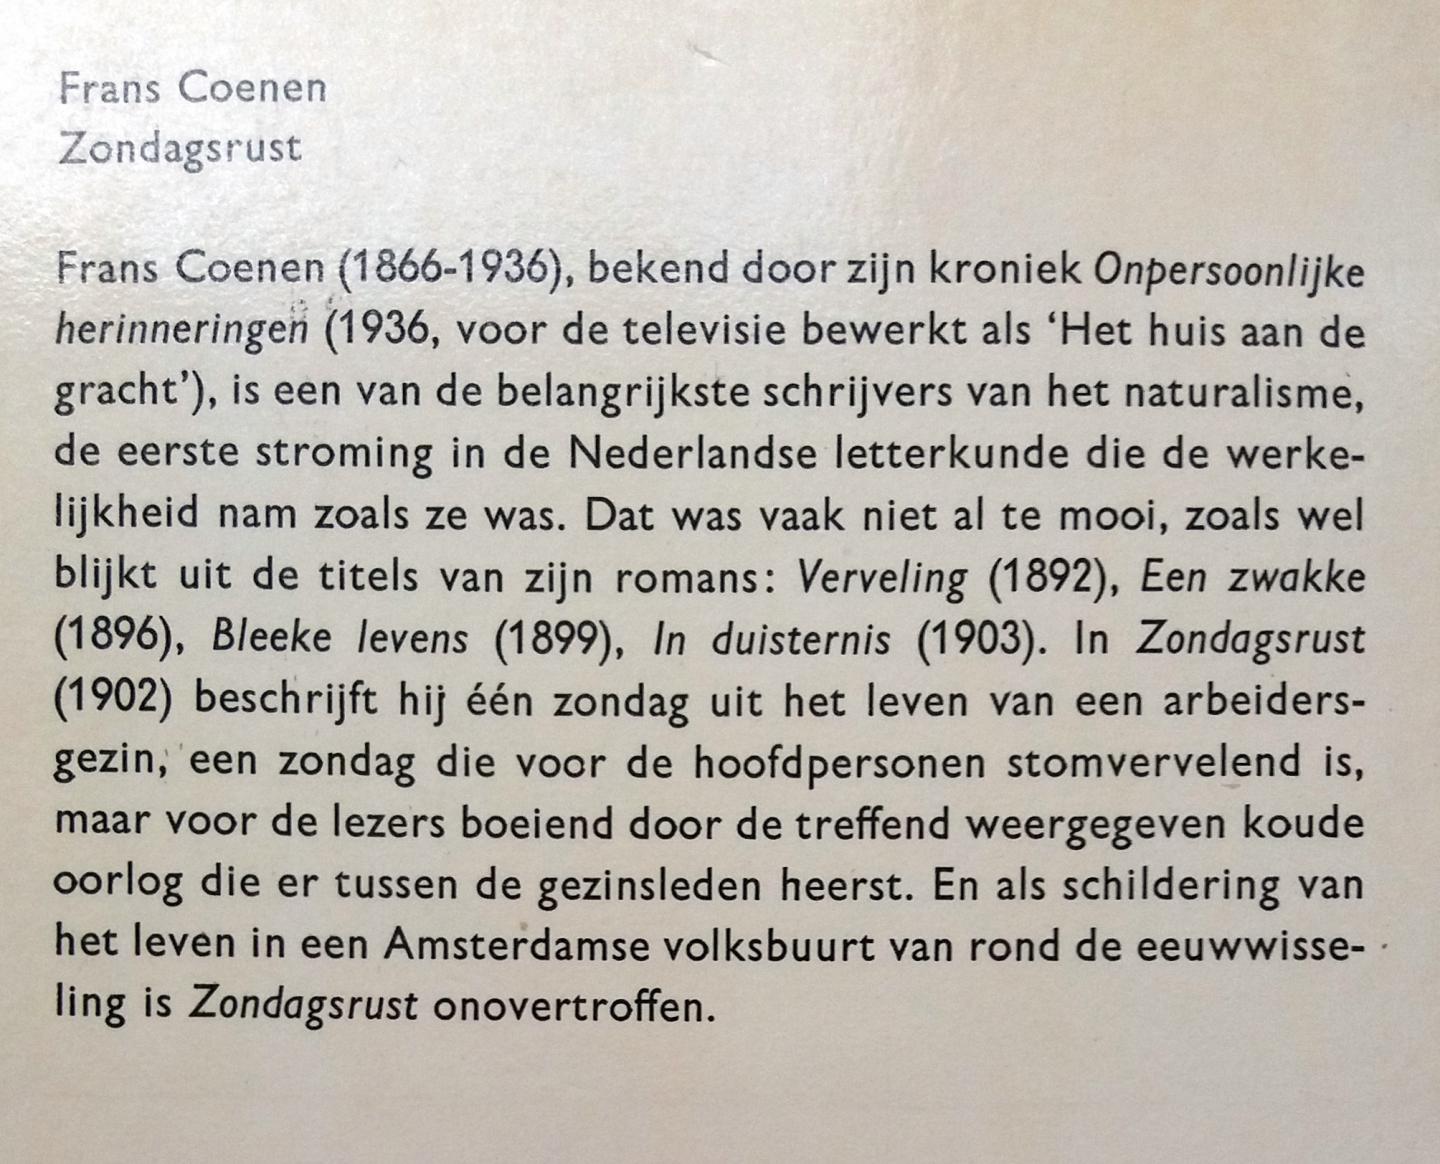 GERESERVEERD VOOR KOPER Coenen, Frans - Zondagsrust (Ex.2) (Salamander No.498)